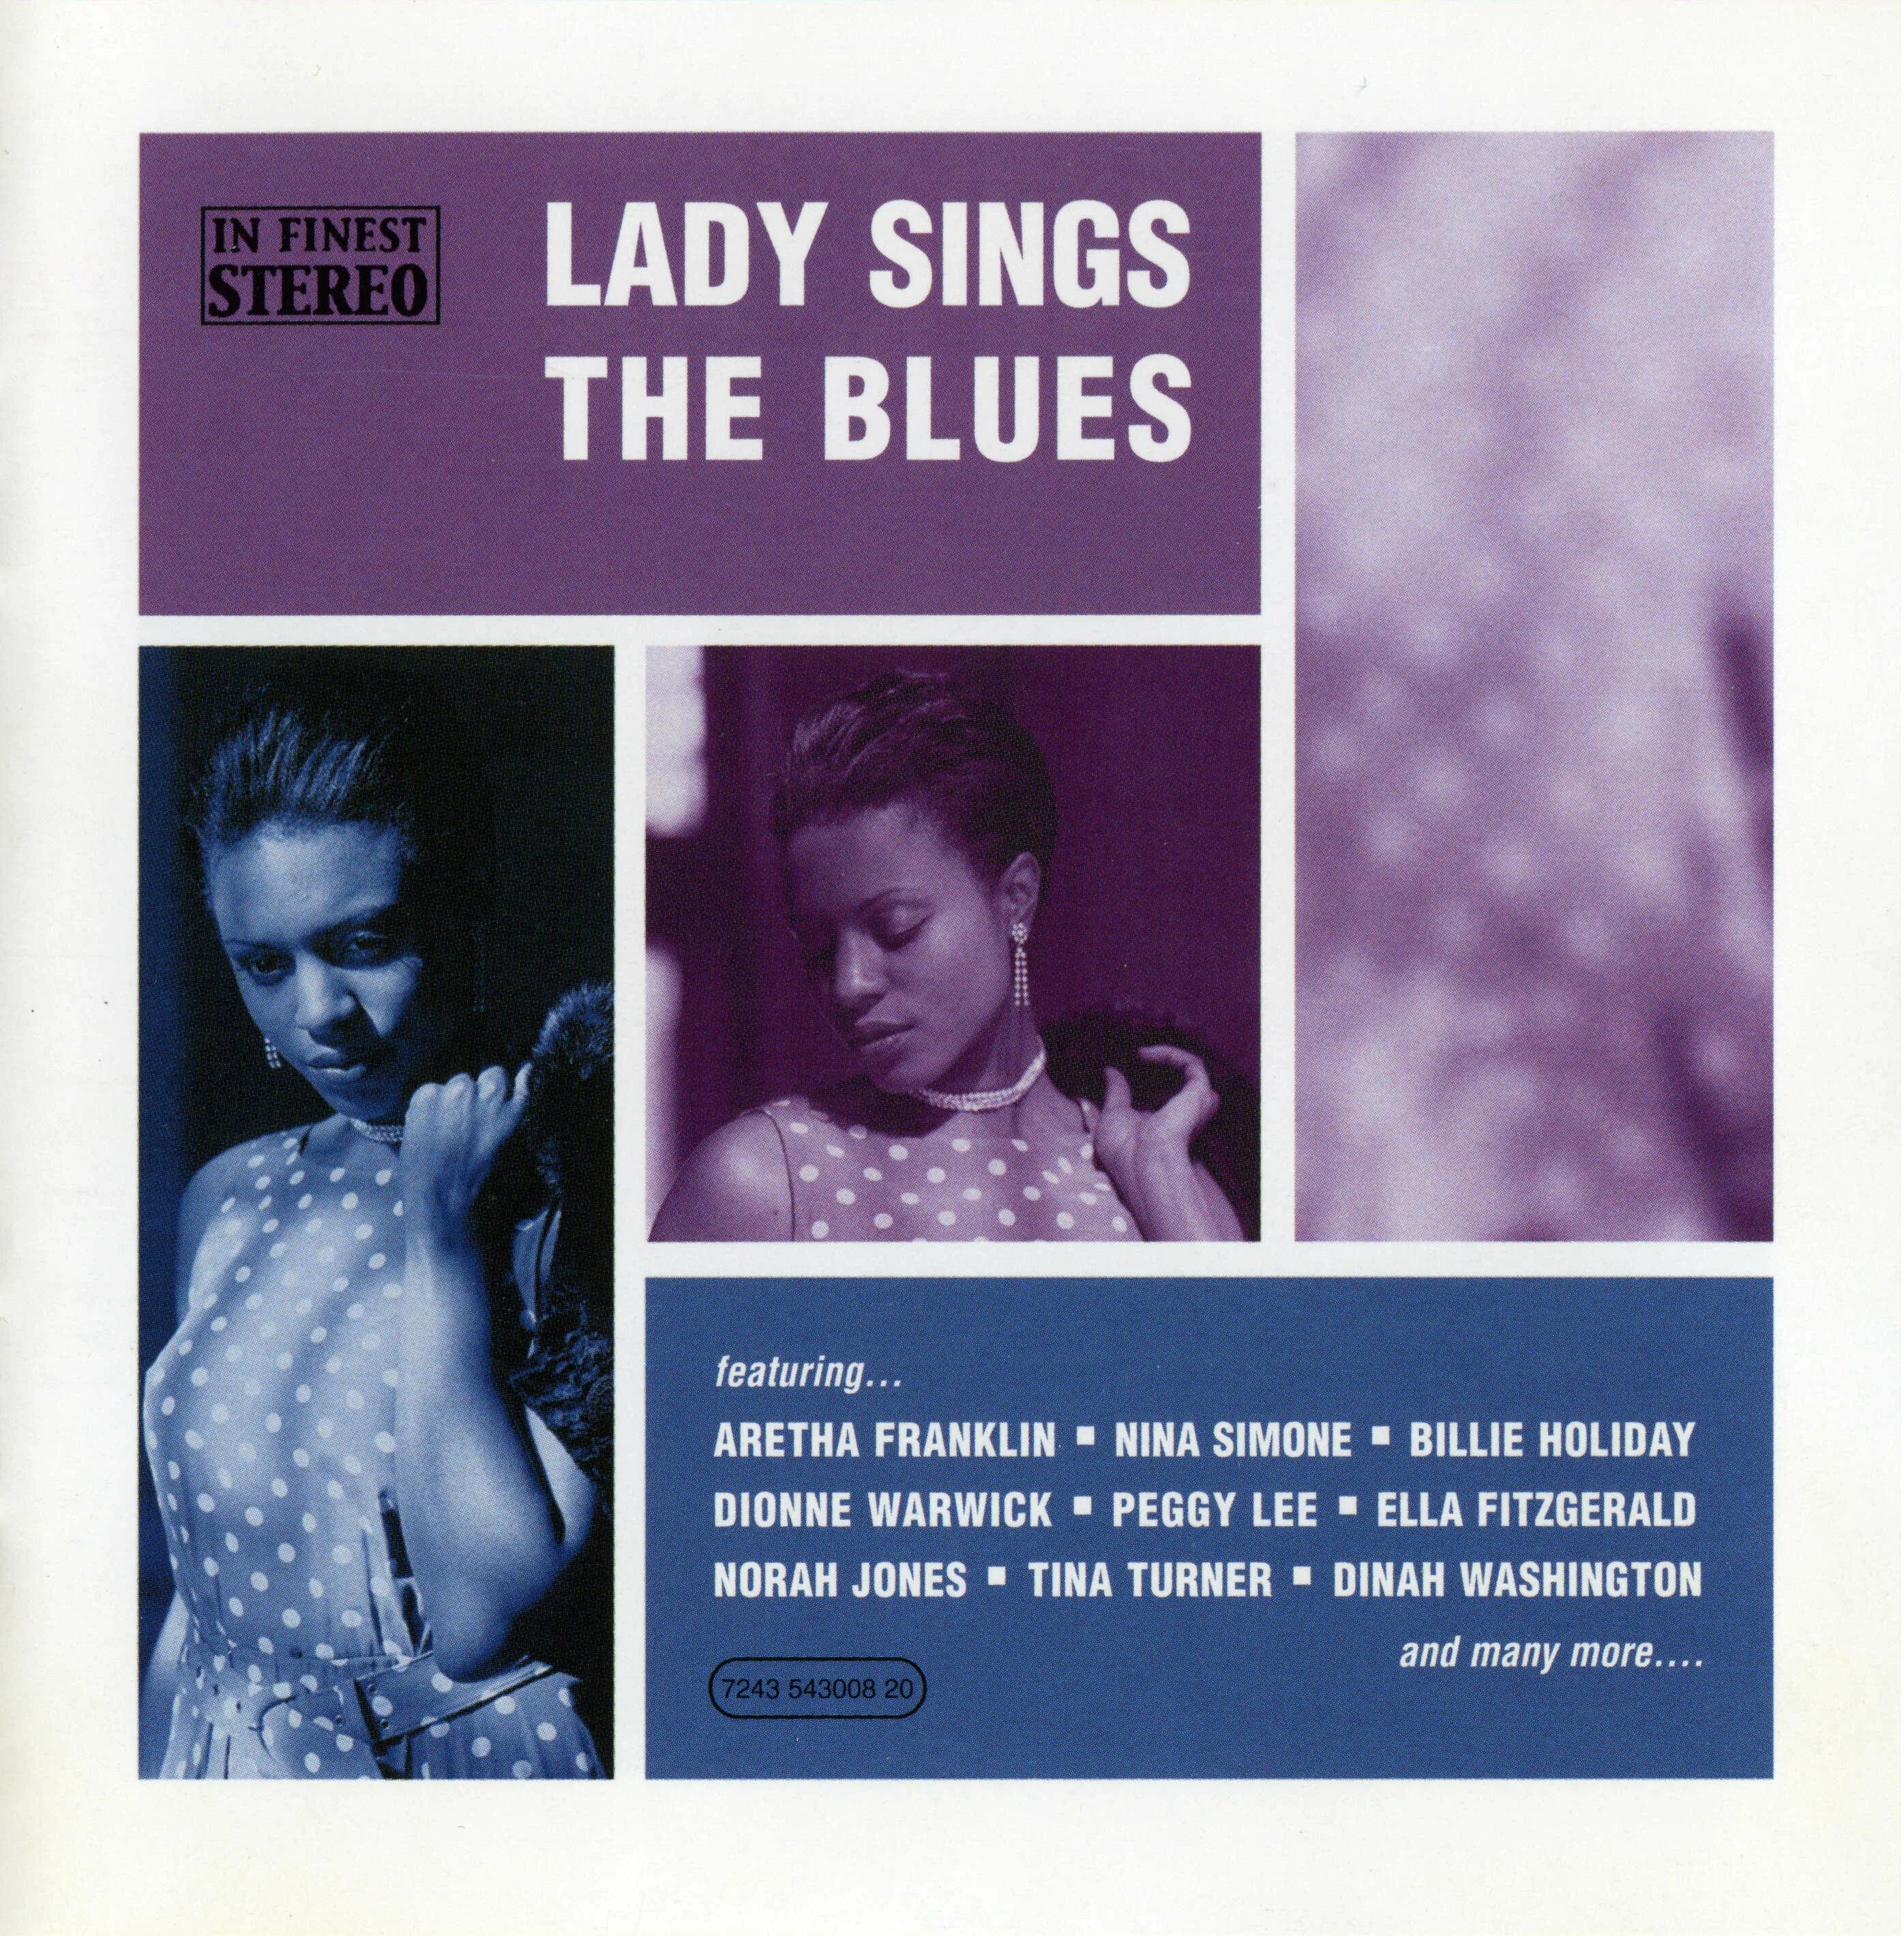 Sings the blues. Lady Sings the Blues. Lady Sings the Blues album. Lady Sings the Blues Vinyl. Обложка для двд Lady Sings the Blues 1972.